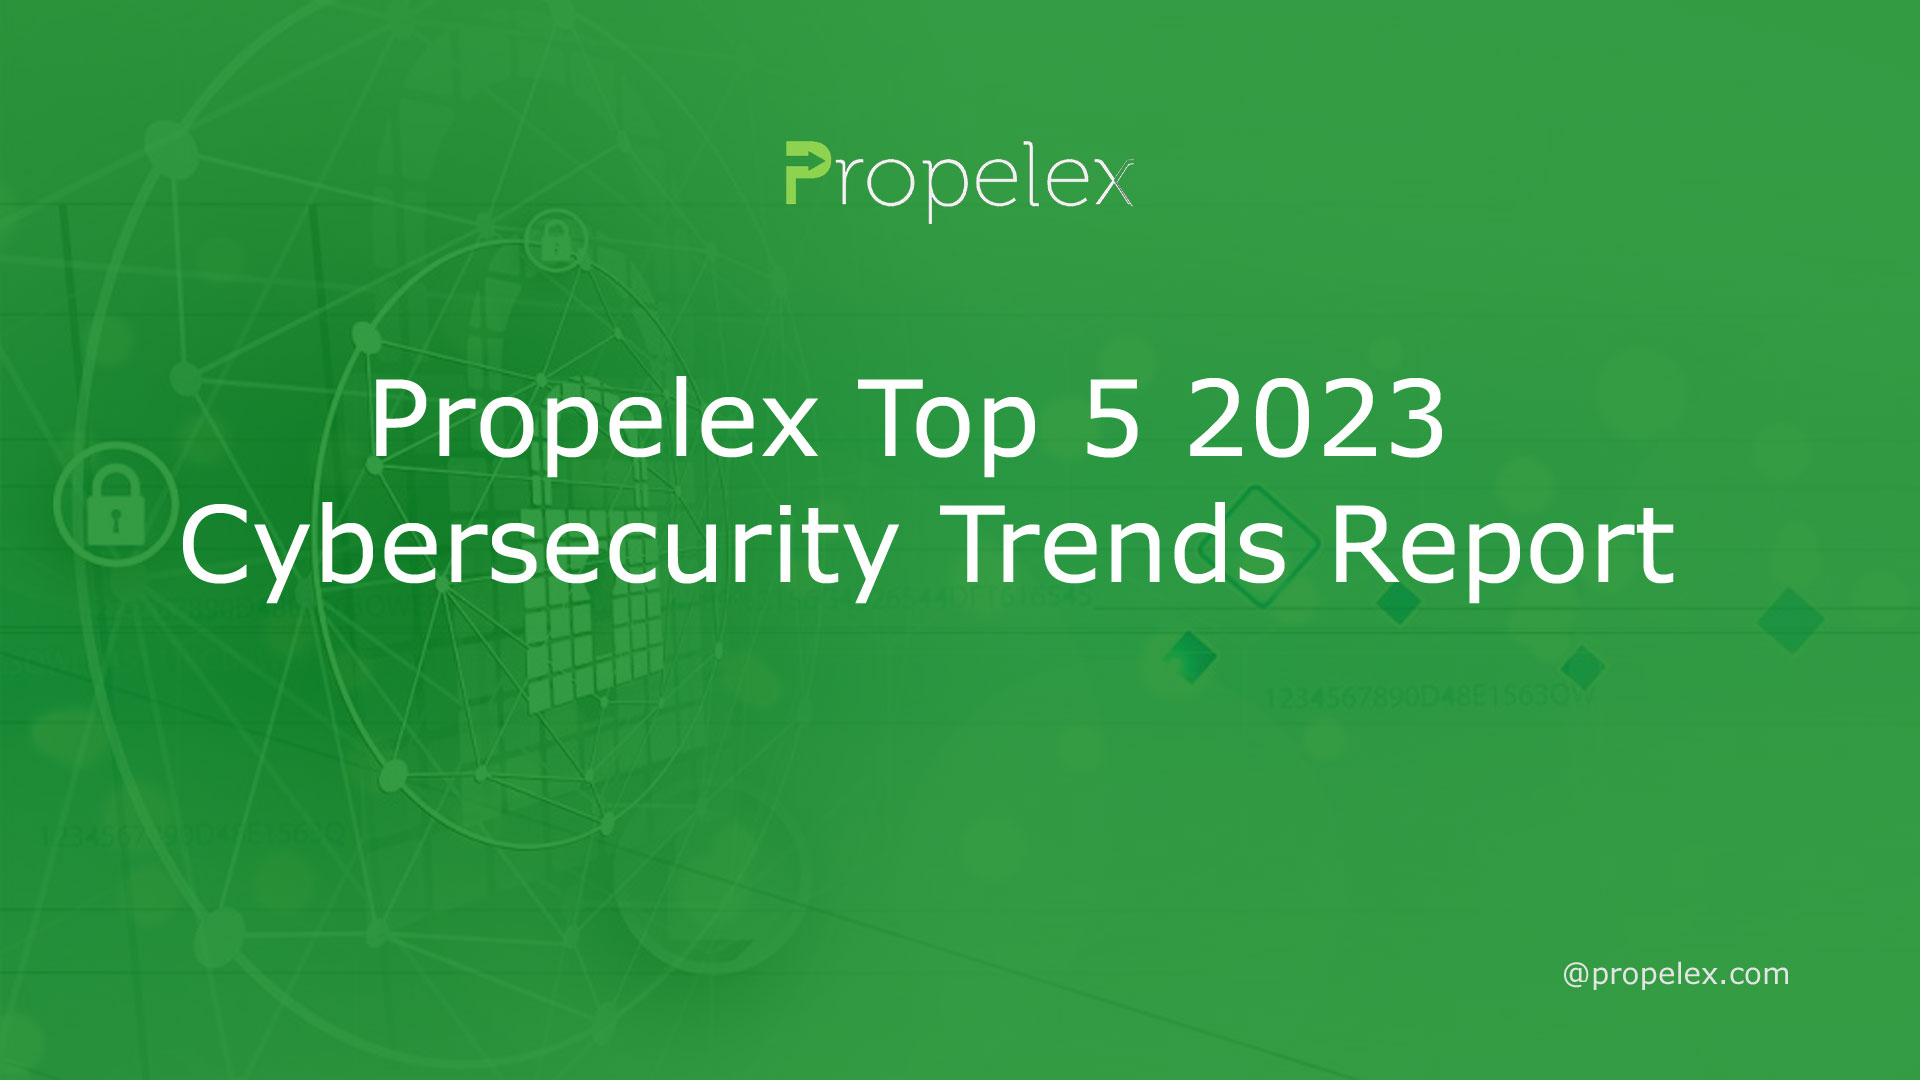 Propelex Top 5 2023 Cybersecurity Trends Report